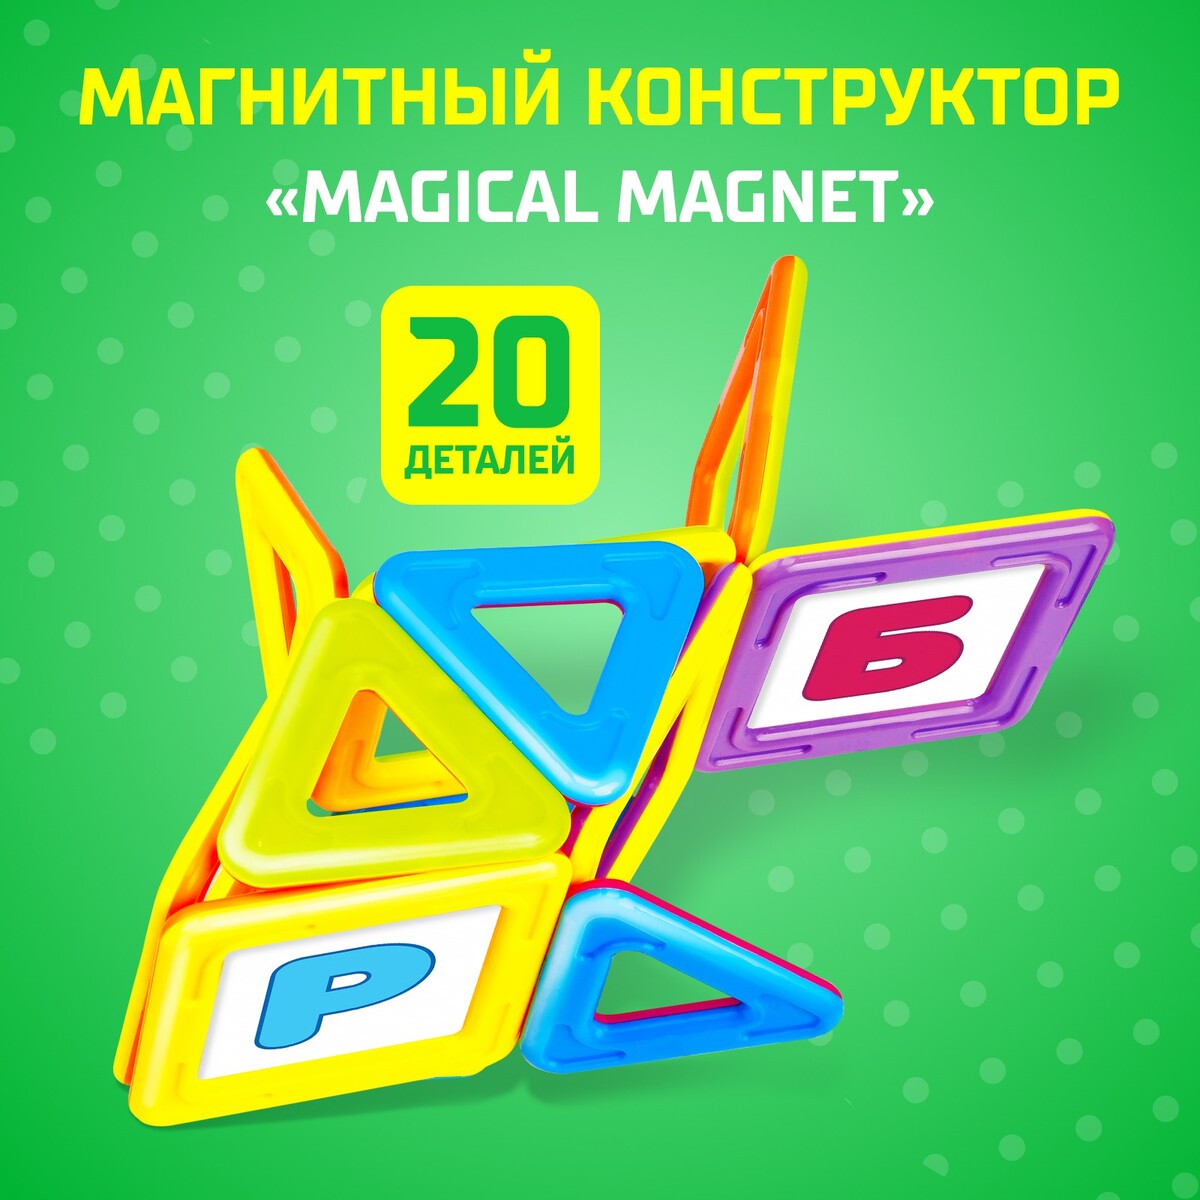 Магнитный конструктор magical magnet, 20 деталей, детали матовые конструктор магнитный 42 детали